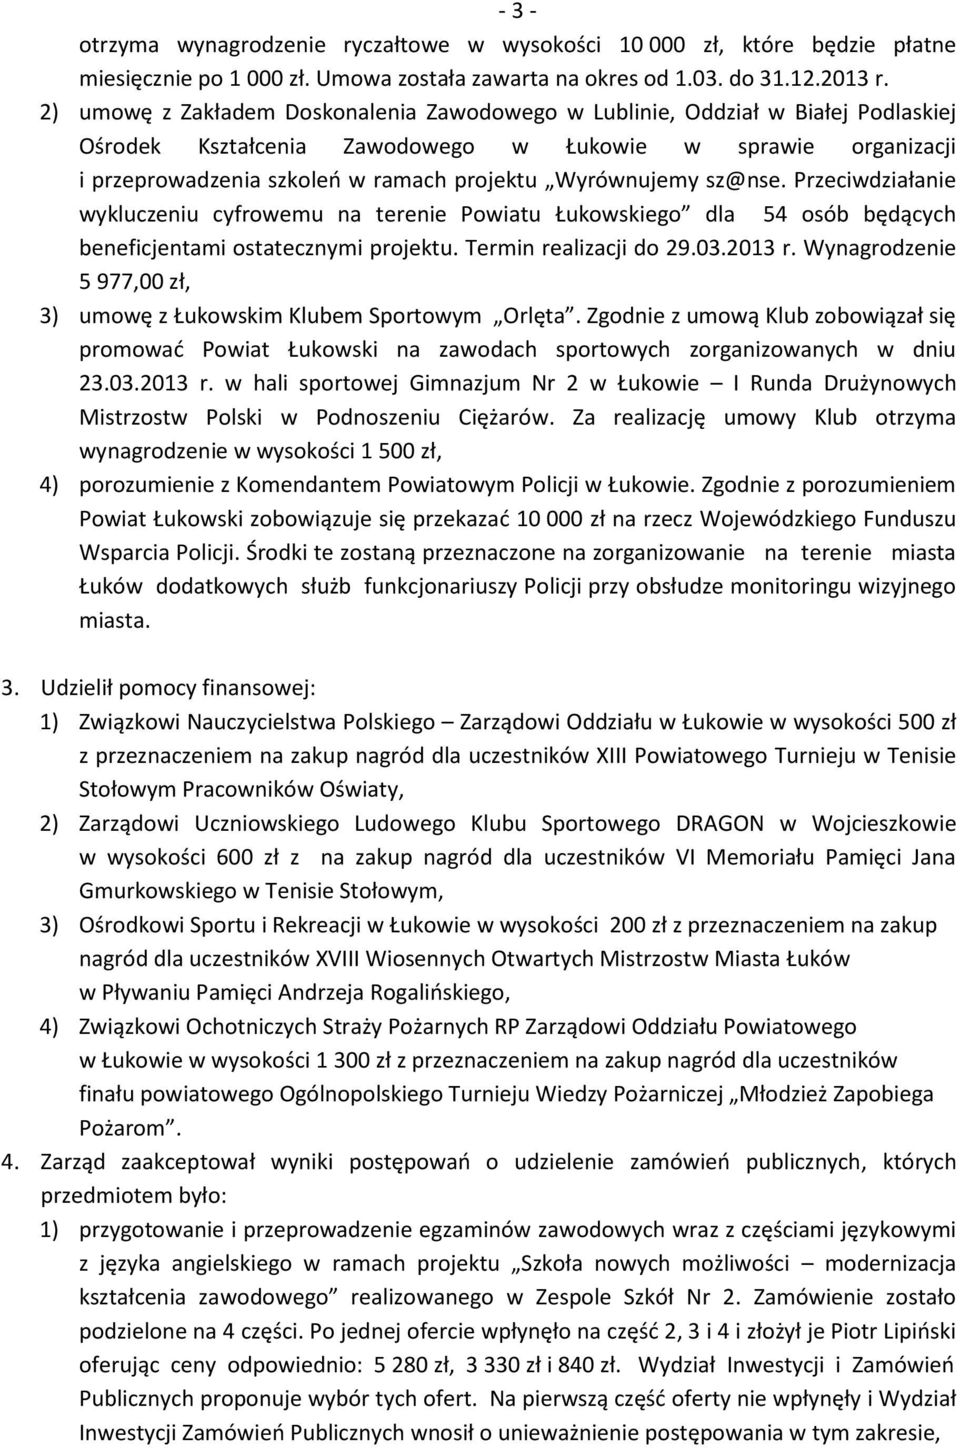 Wyrównujemy sz@nse. Przeciwdziałanie wykluczeniu cyfrowemu na terenie Powiatu Łukowskiego dla 54 osób będących beneficjentami ostatecznymi projektu. Termin realizacji do 29.03.2013 r.